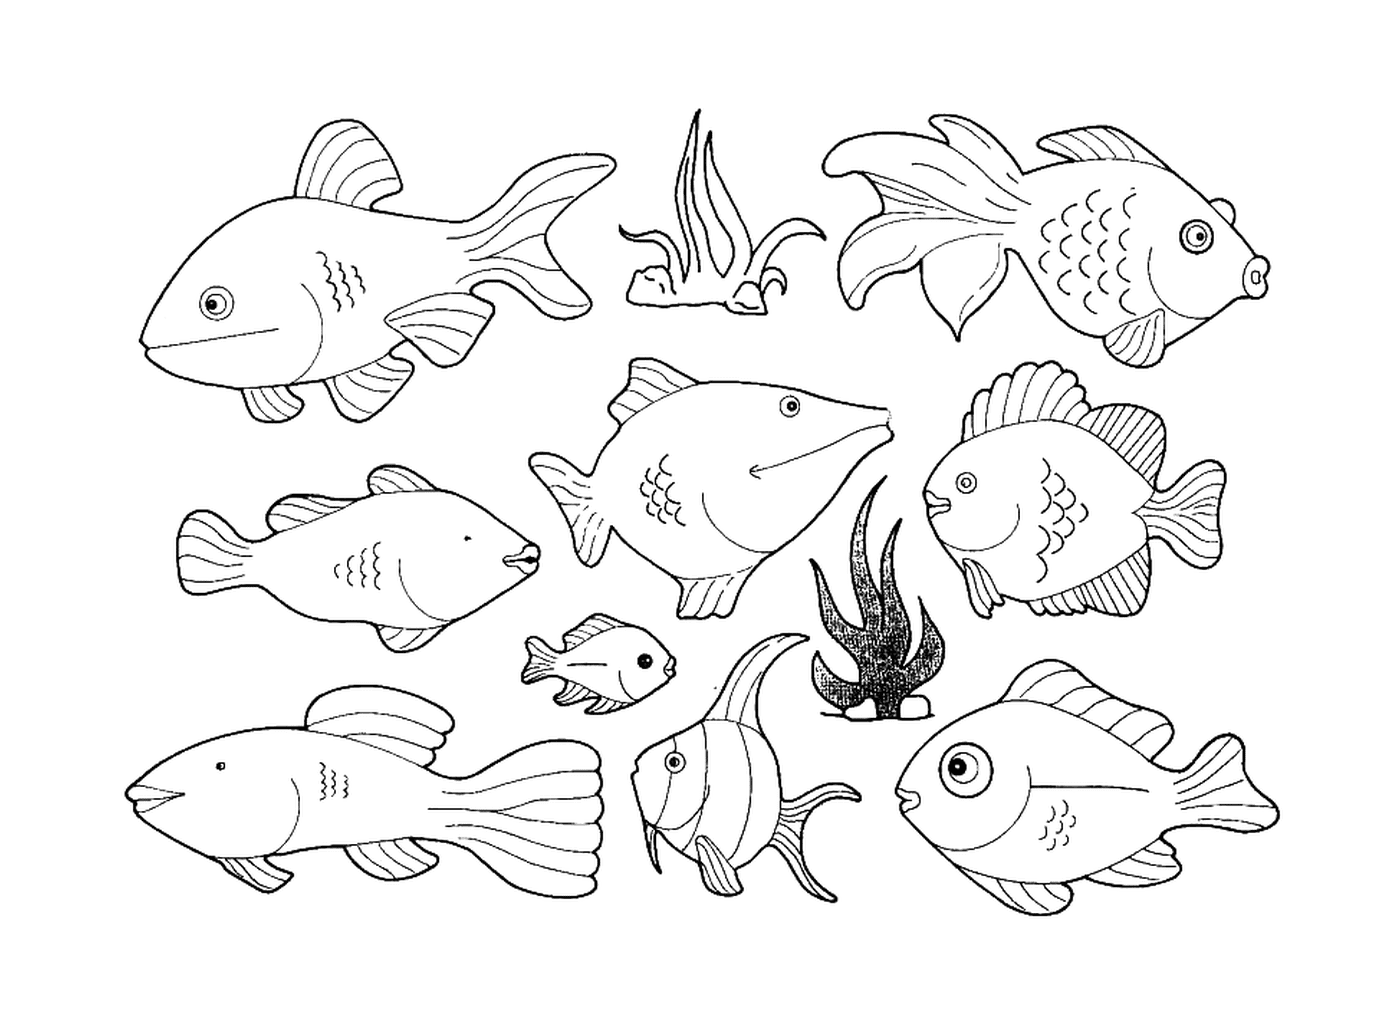  Множество видов рыб на этой странице 